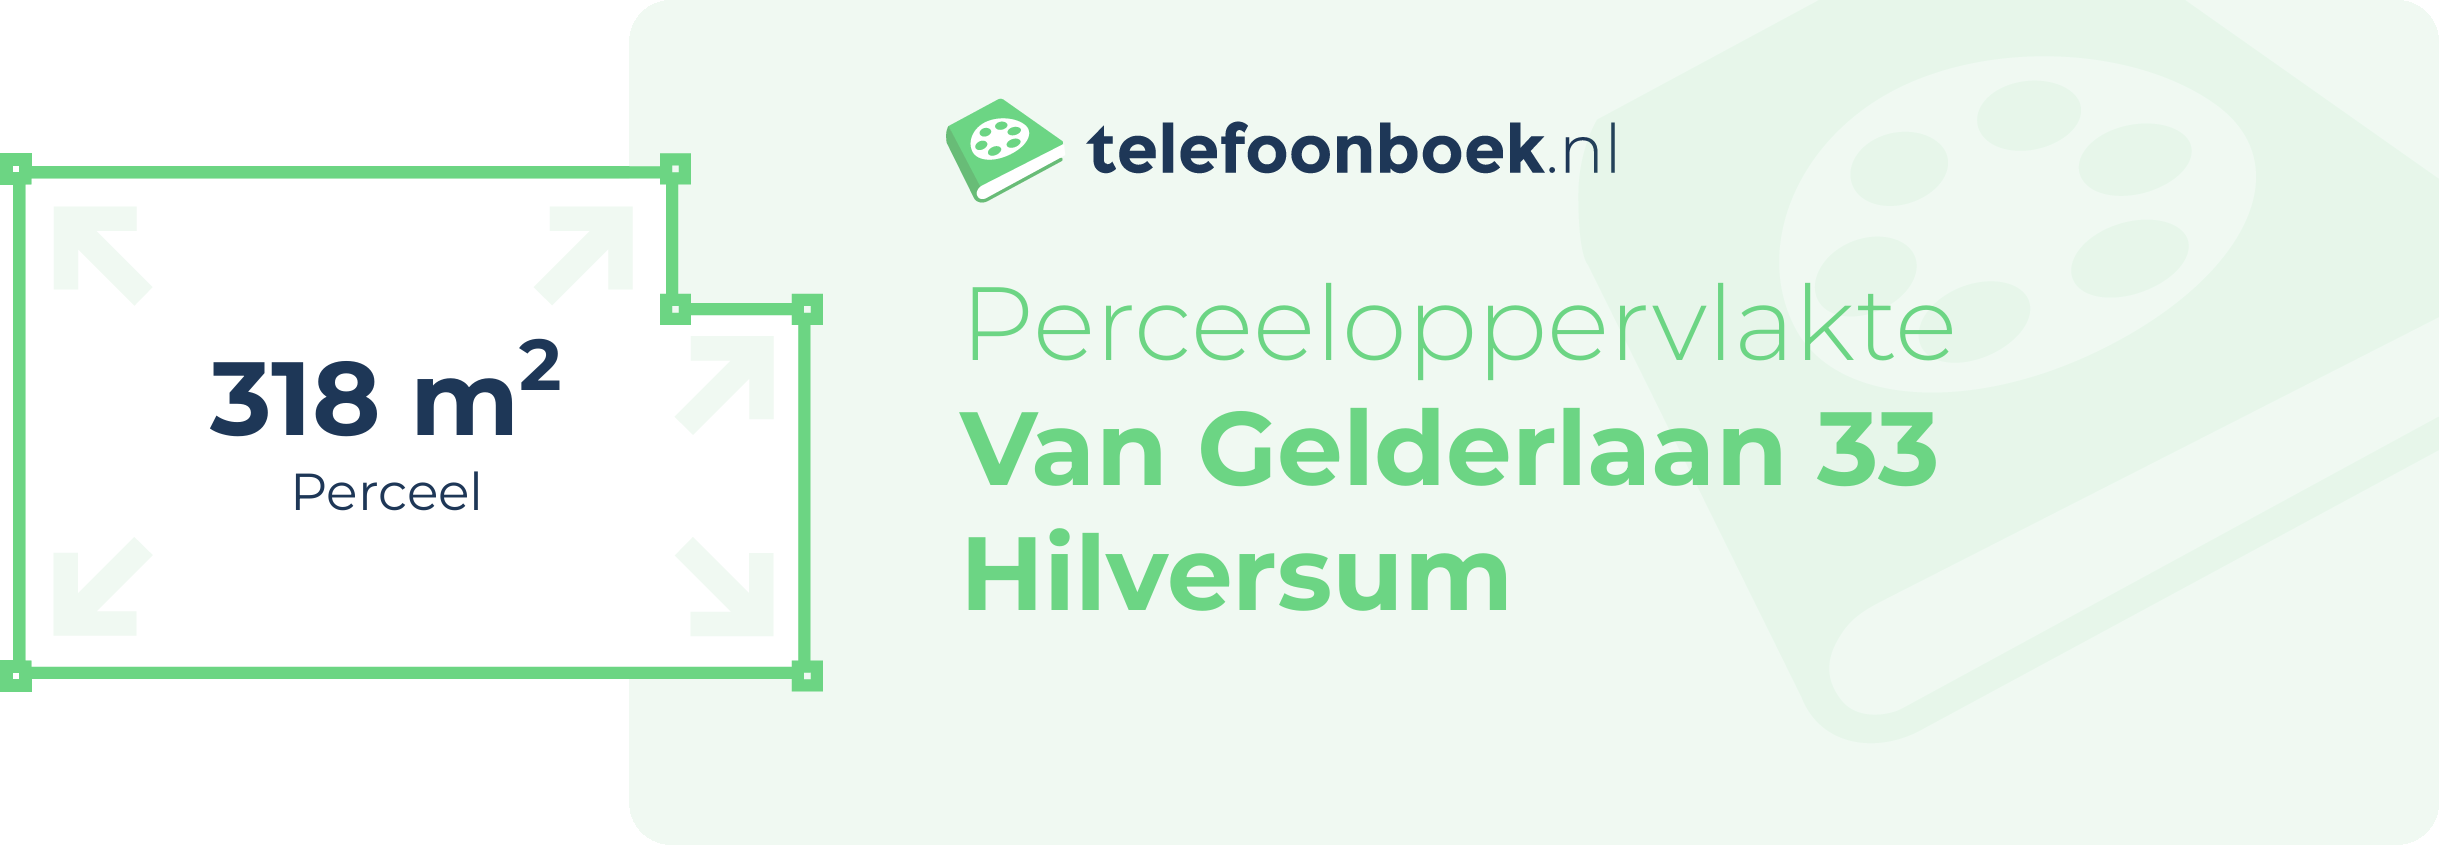 Perceeloppervlakte Van Gelderlaan 33 Hilversum